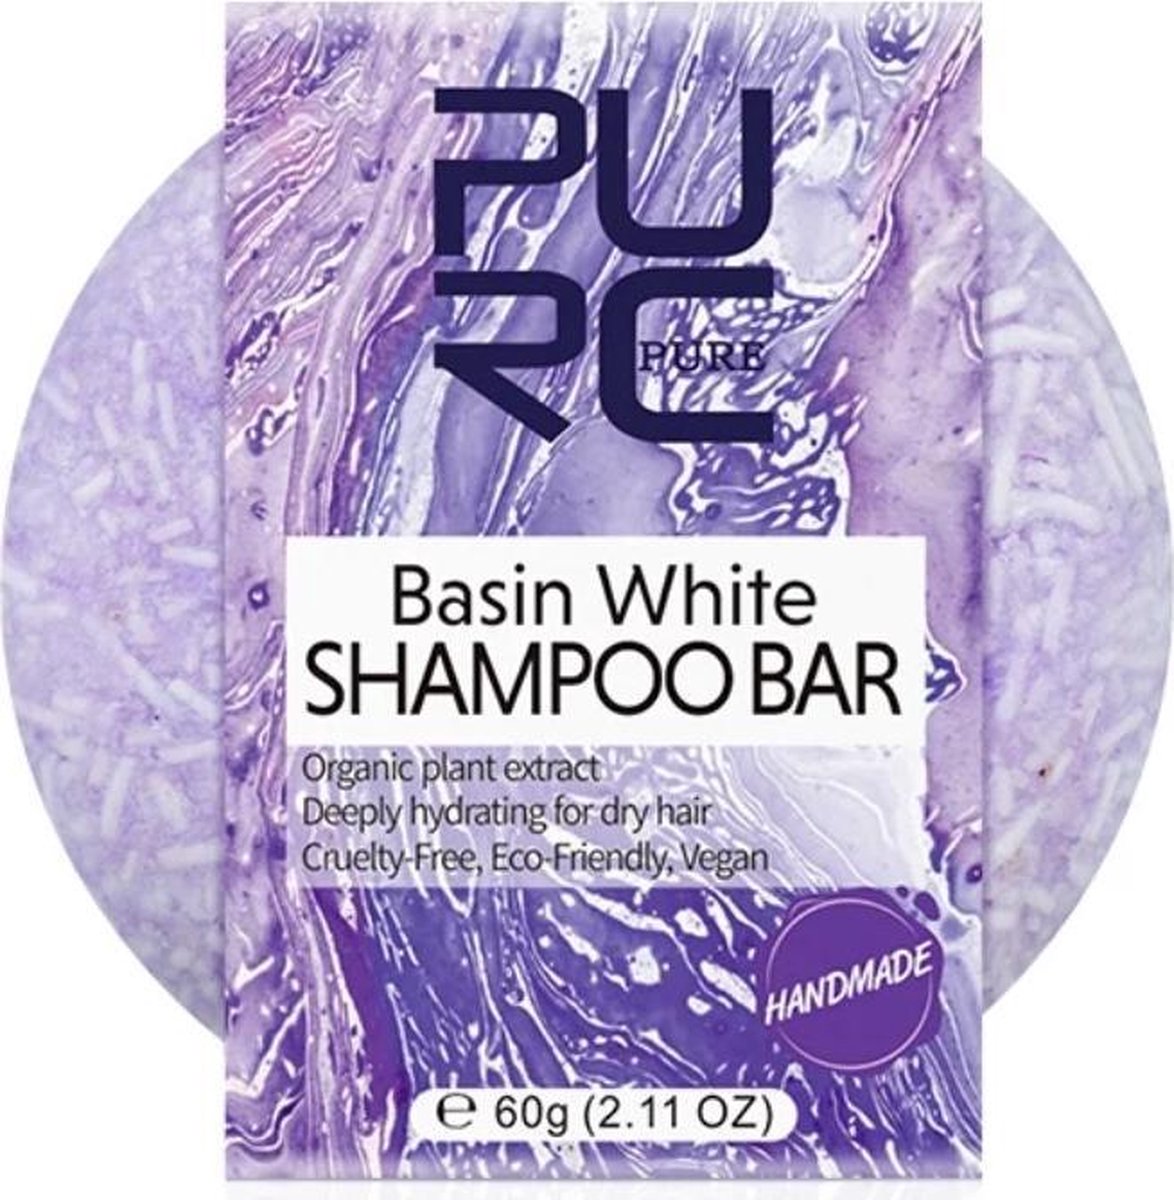 Handmade shampoo bar - Basin white